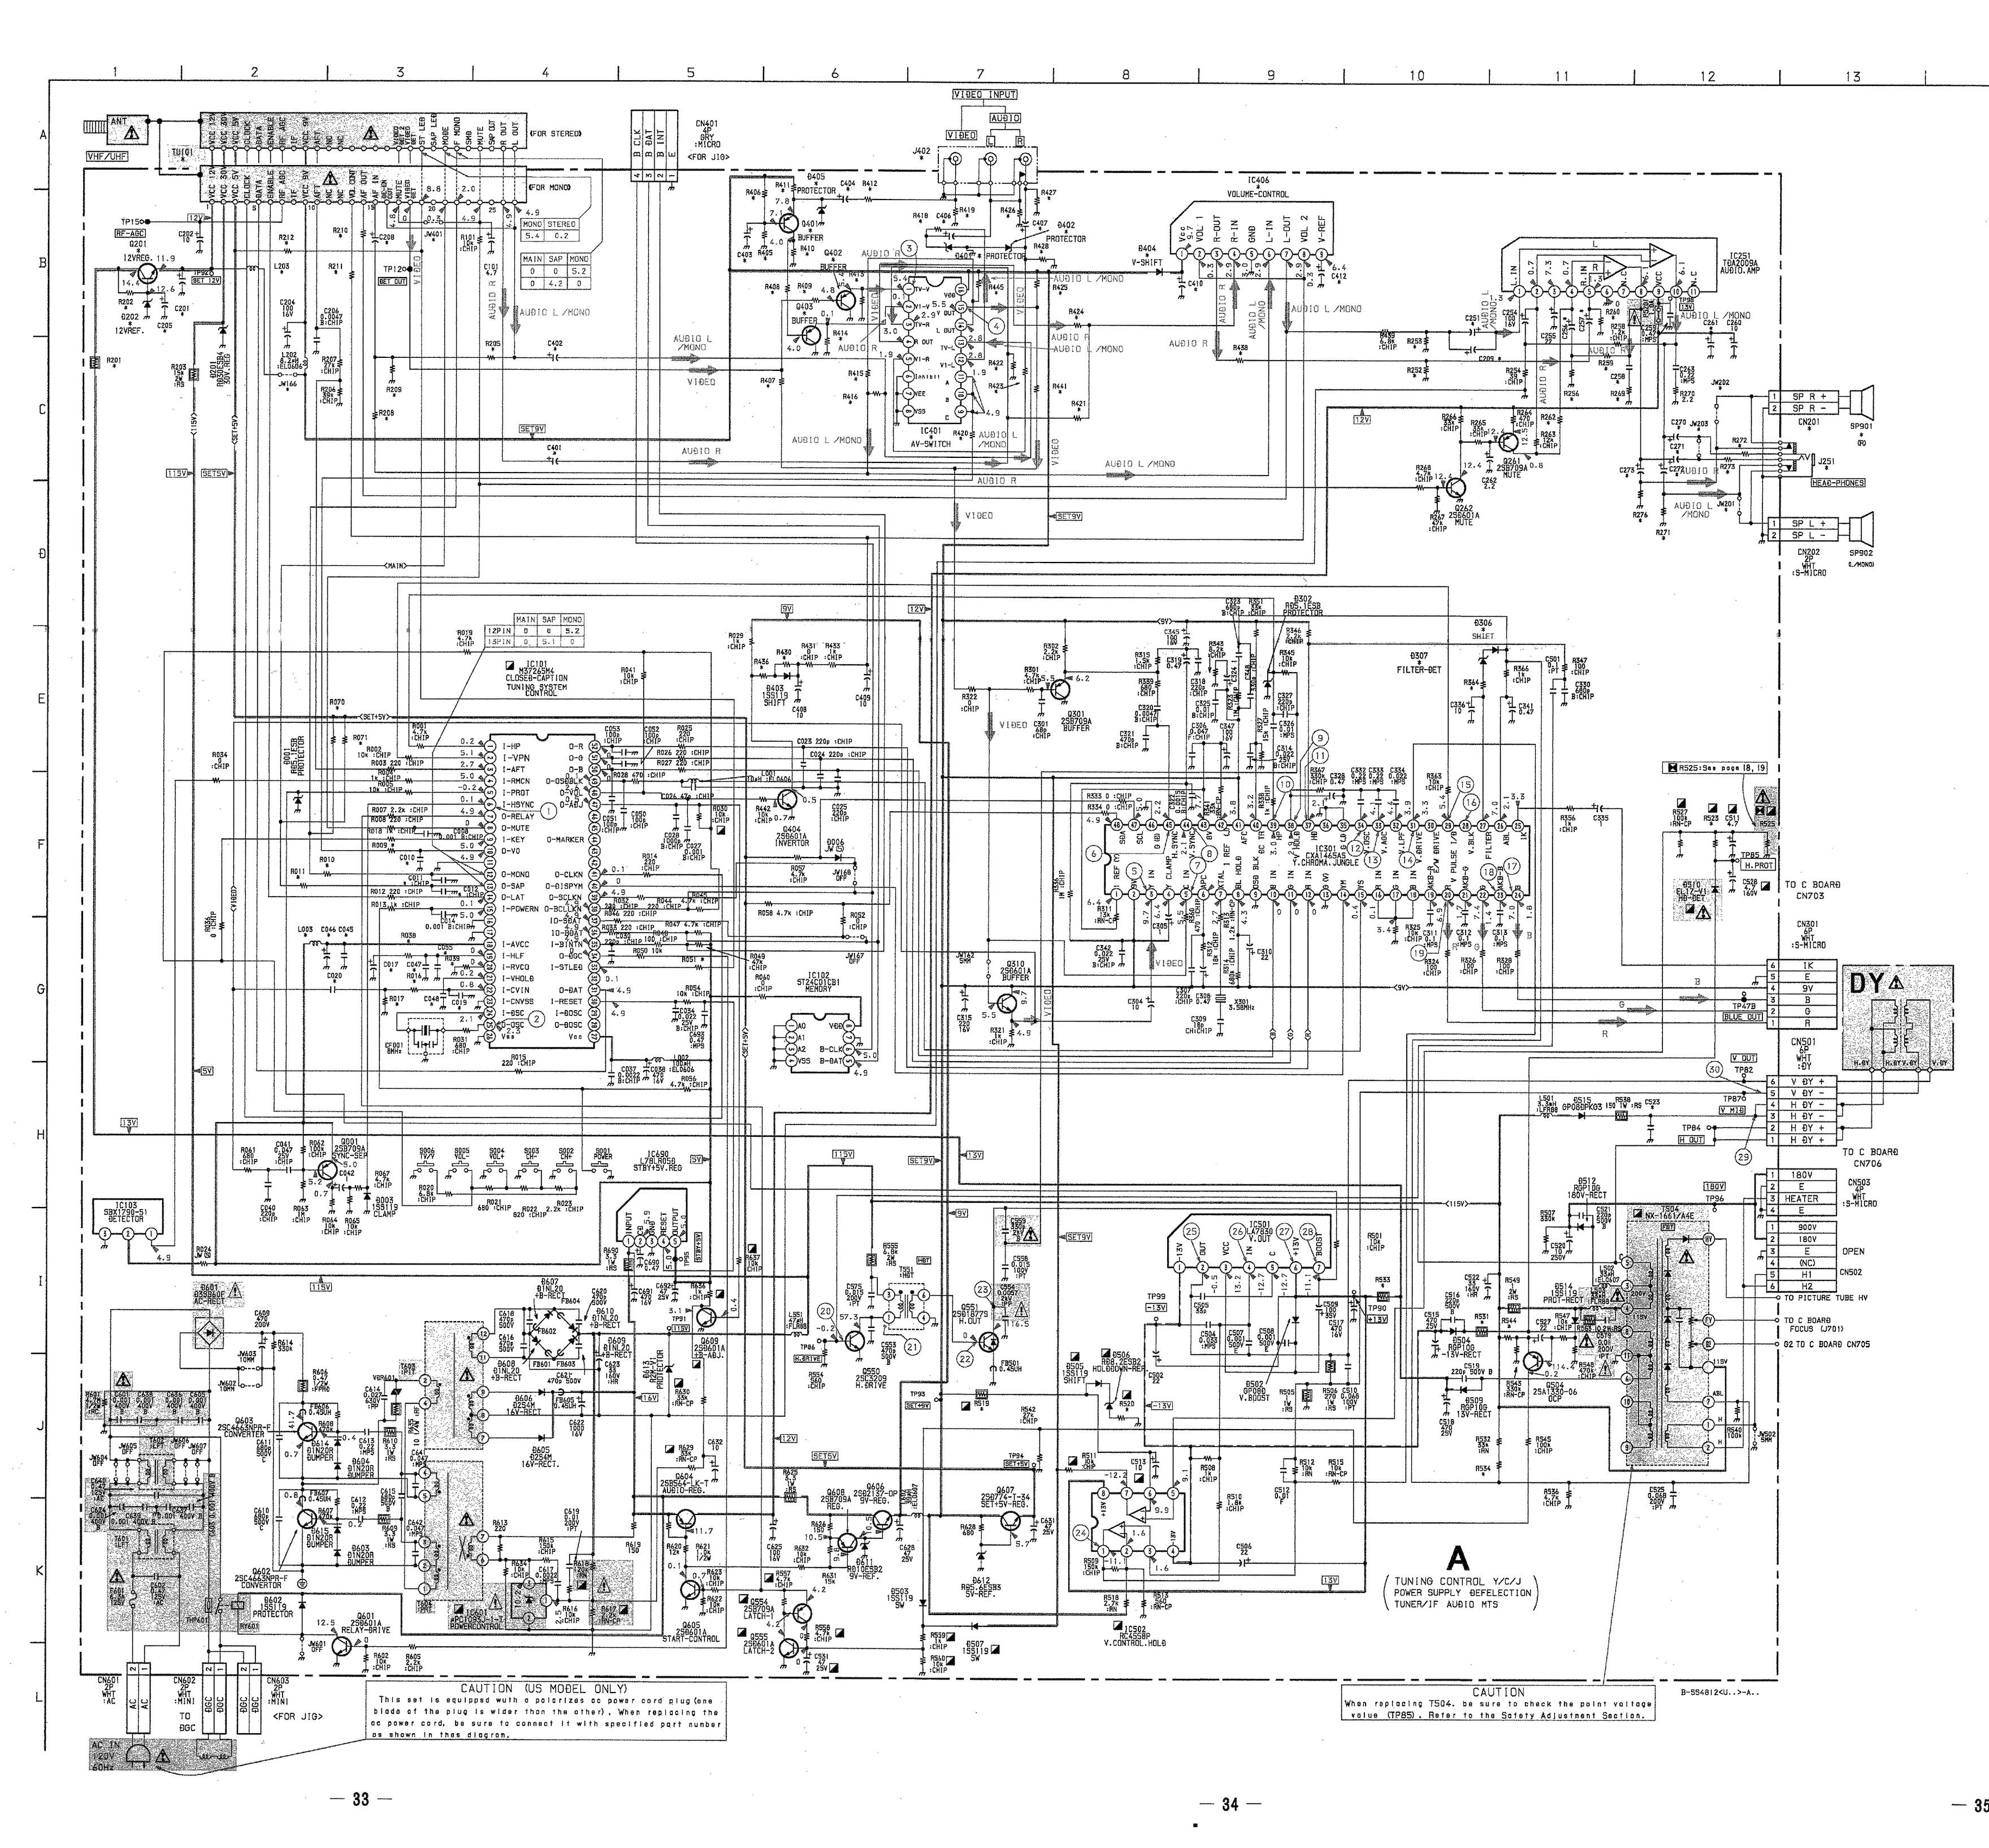 Sony BA-2 schematics